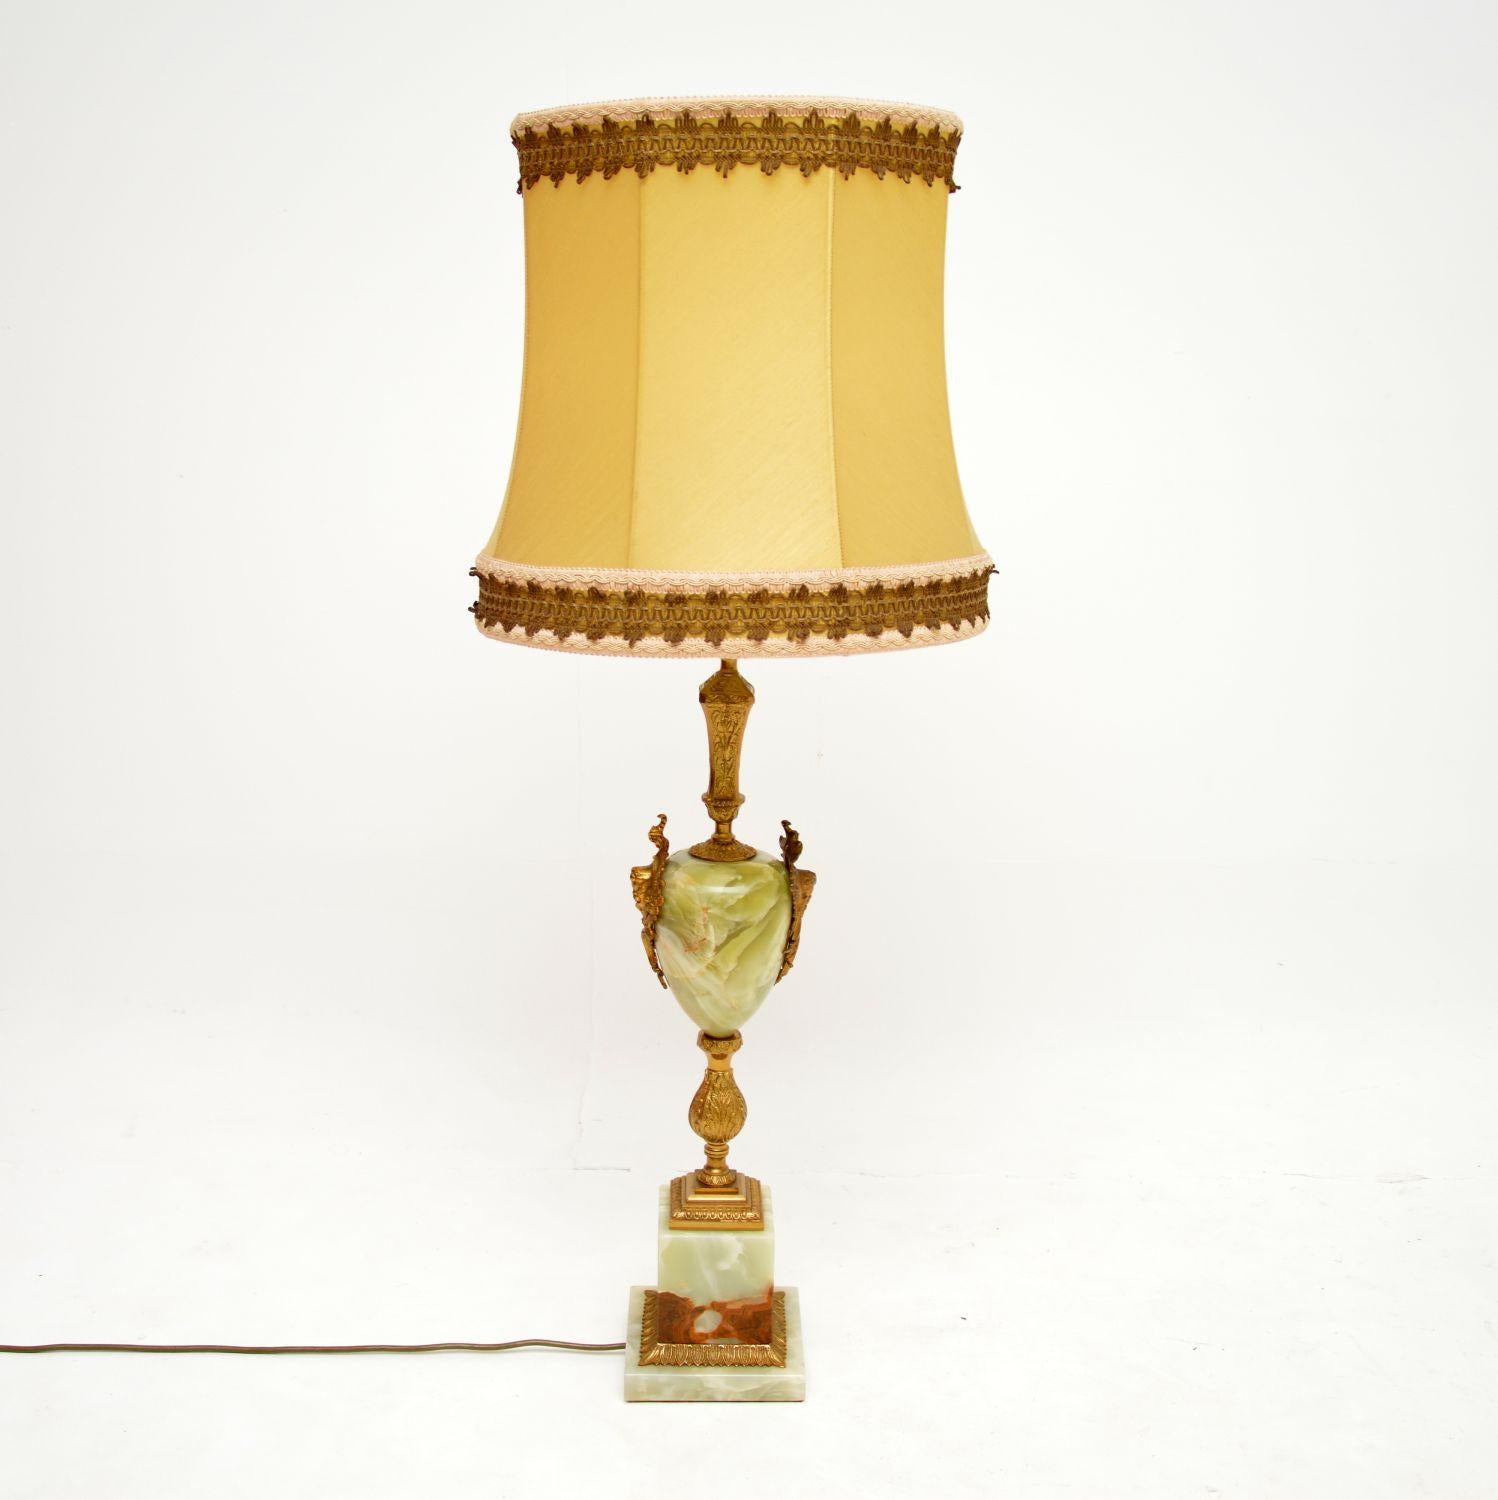 Une grande et impressionnante lampe de table française ancienne en onyx et métal doré. Il a été fabriqué en France et date des années 1930 environ.

Il est de très bonne qualité, avec une belle coloration de l'onyx et de beaux détails complexes